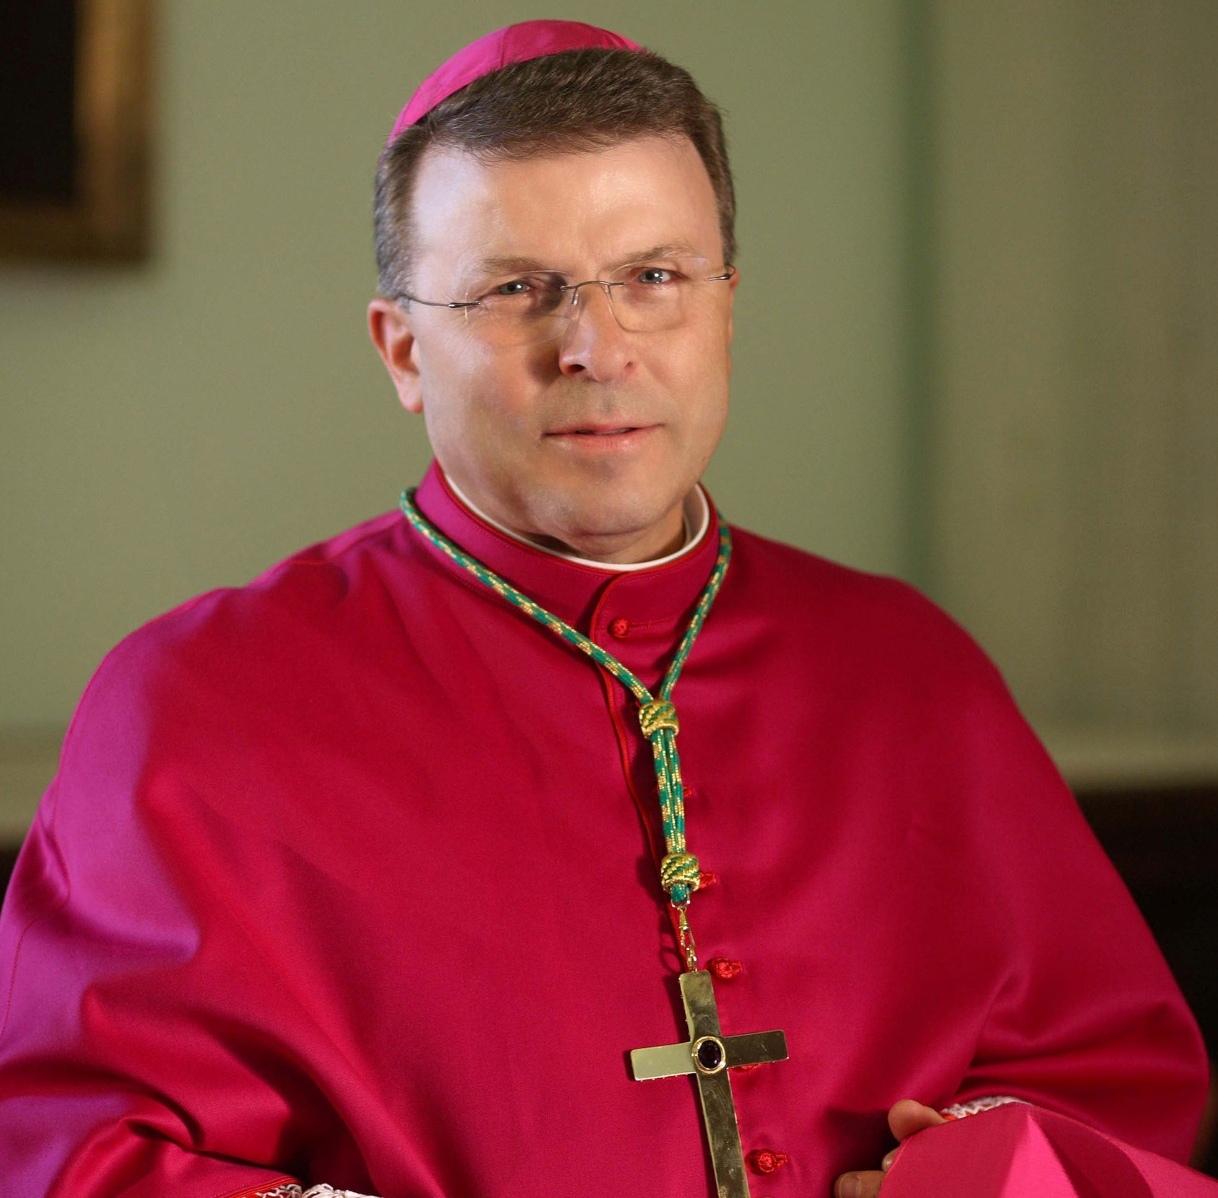 Tragedia a Fano, il Vescovo: “Siamo vicini alla famiglia”